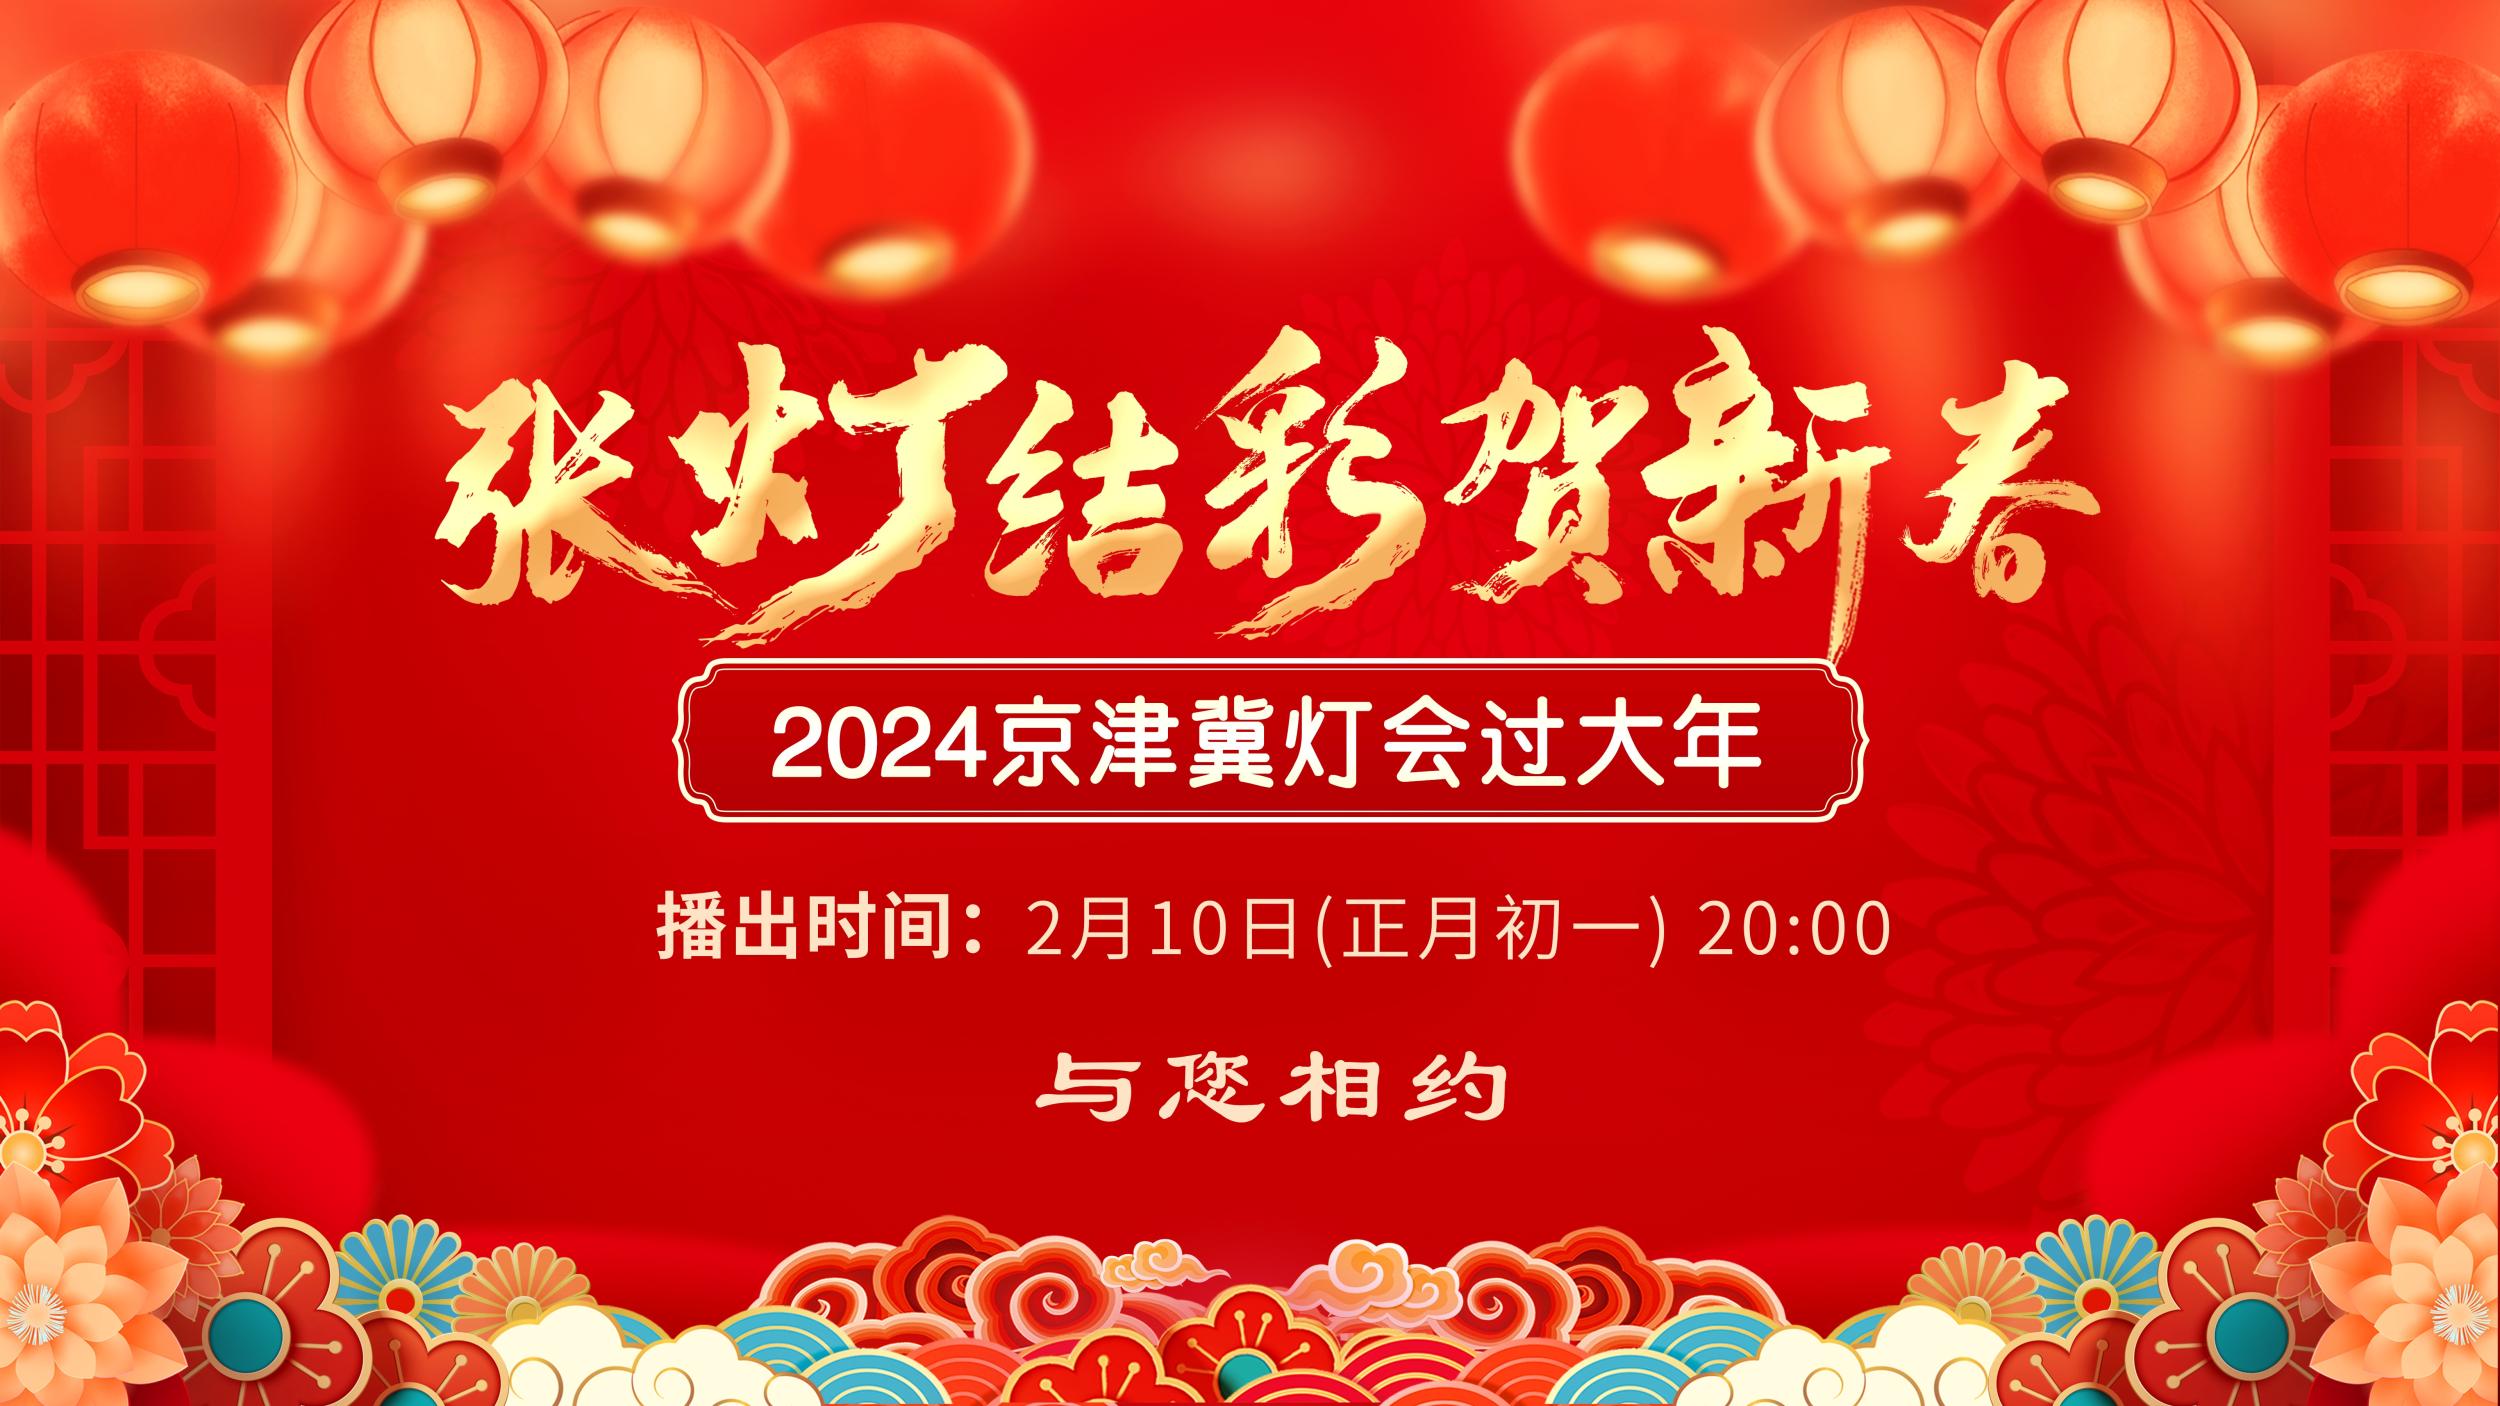 “張燈結彩賀新春”2024京津冀燈會過大年